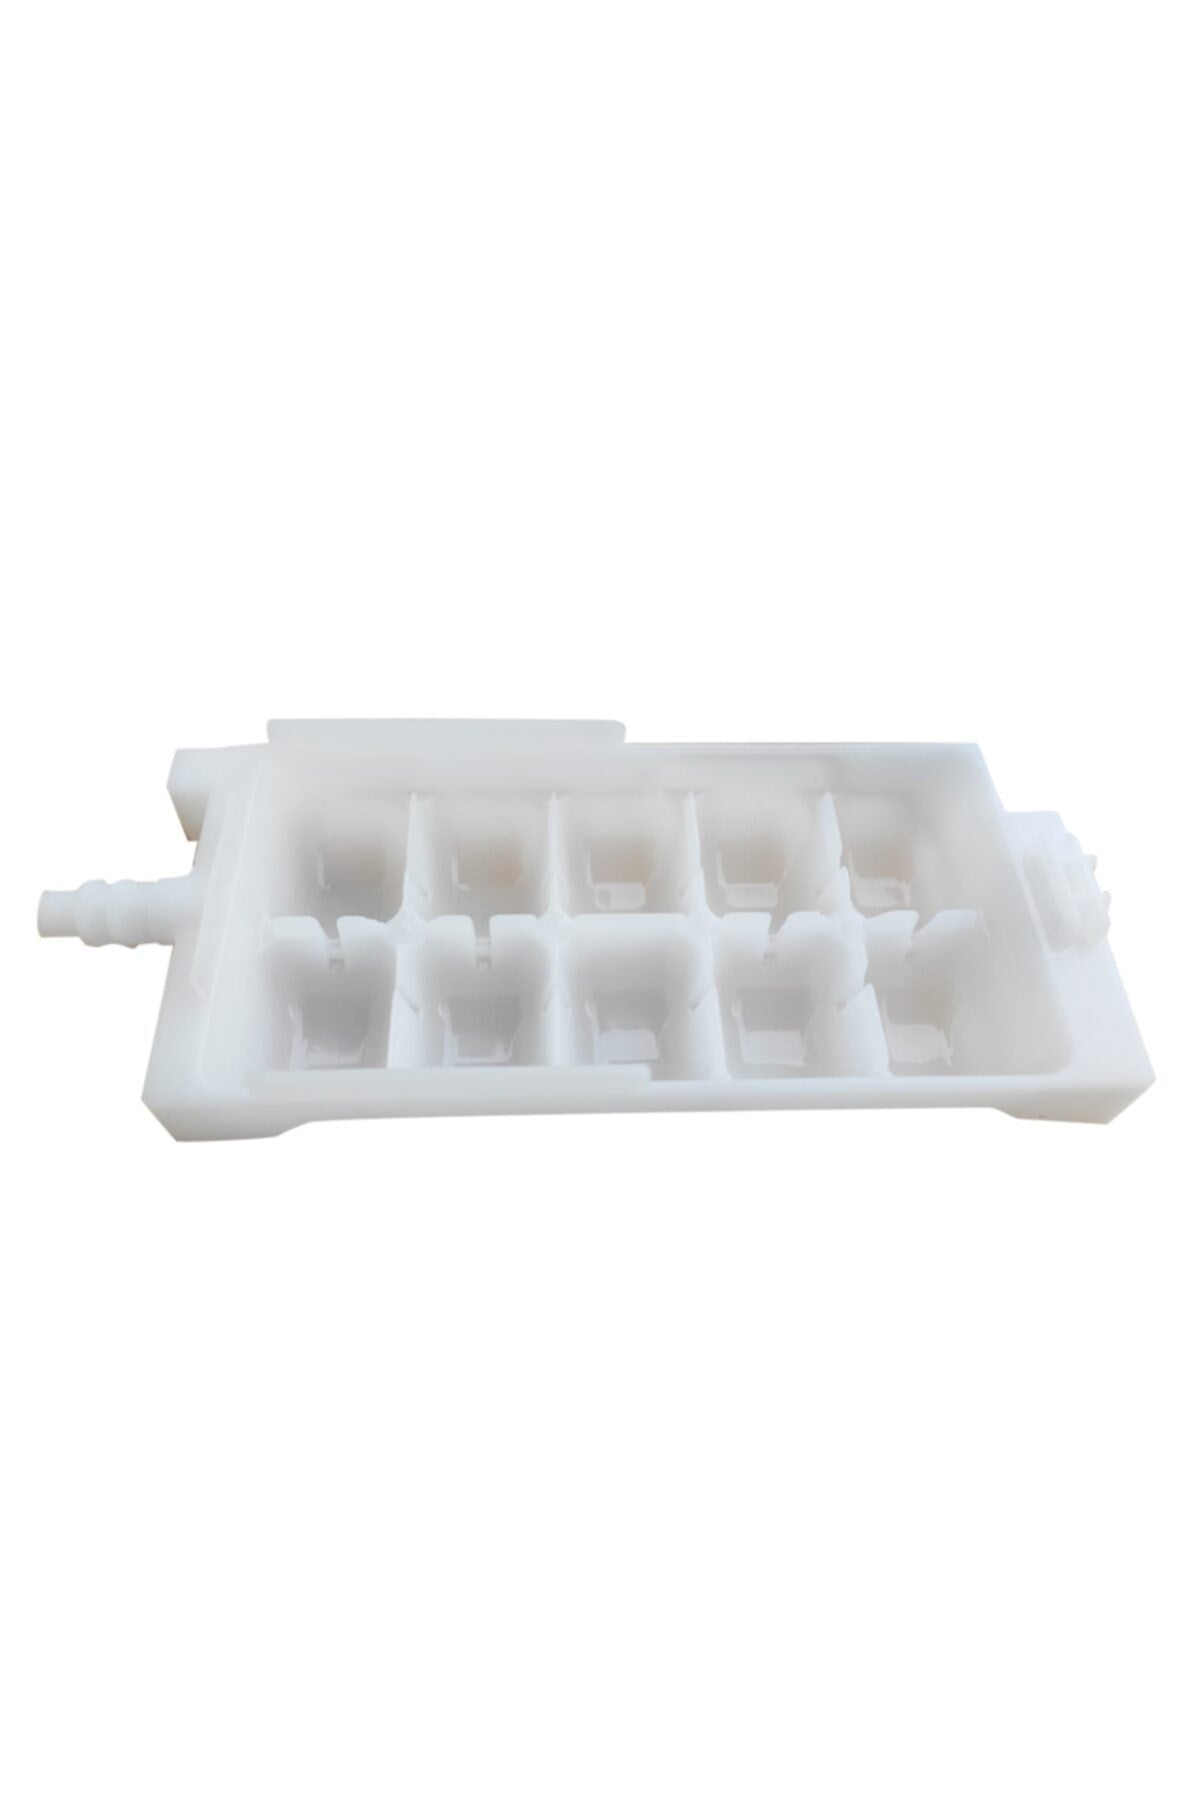 Fridge Freezer Ice Maker Cube Tray For Beko, Arcelik, Blomberg Refrigerator 4823270100 Spare Parts OEM  Ice Tray Fridge Freezer